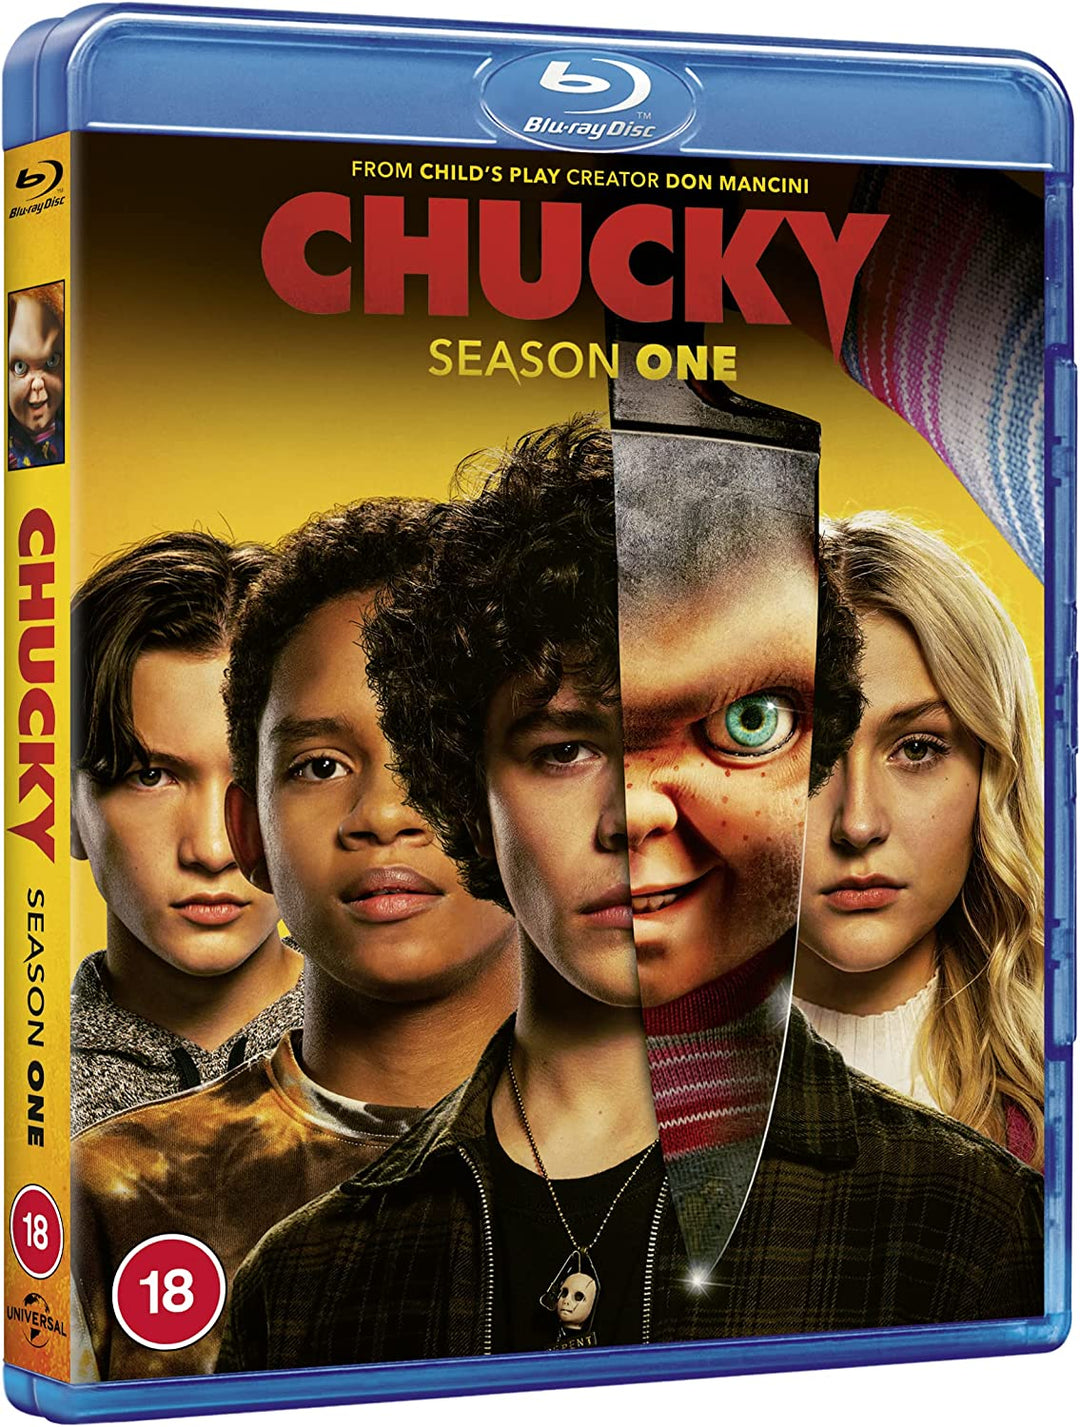 Chucky Season 1 -Horror fiction [Blu-ray] [2021] [Region Free]